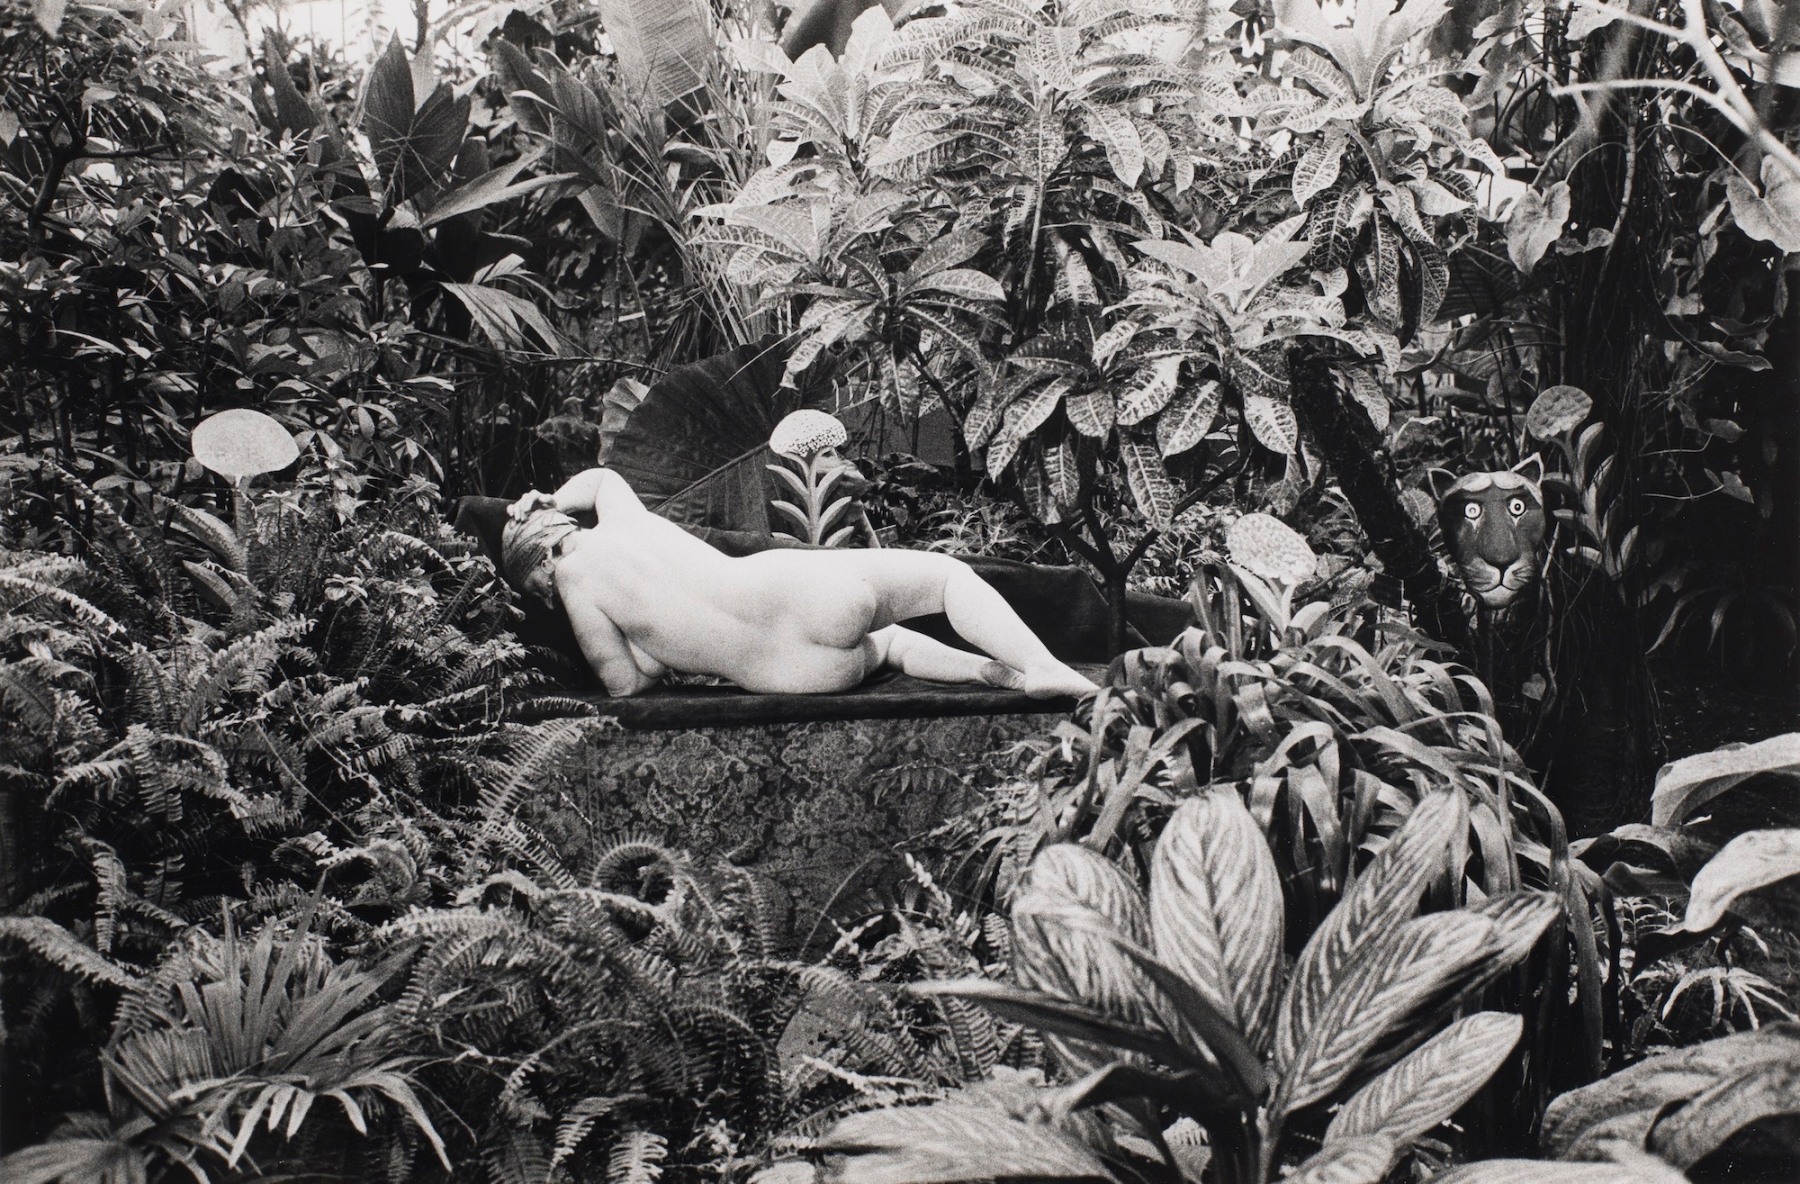 Edouard Boubat (1923-1999)  Jardin des Plantes, Paris Hommage au Douanier Rousseau, 1980  Gelatin silver print  12 x 16 inches (paper)